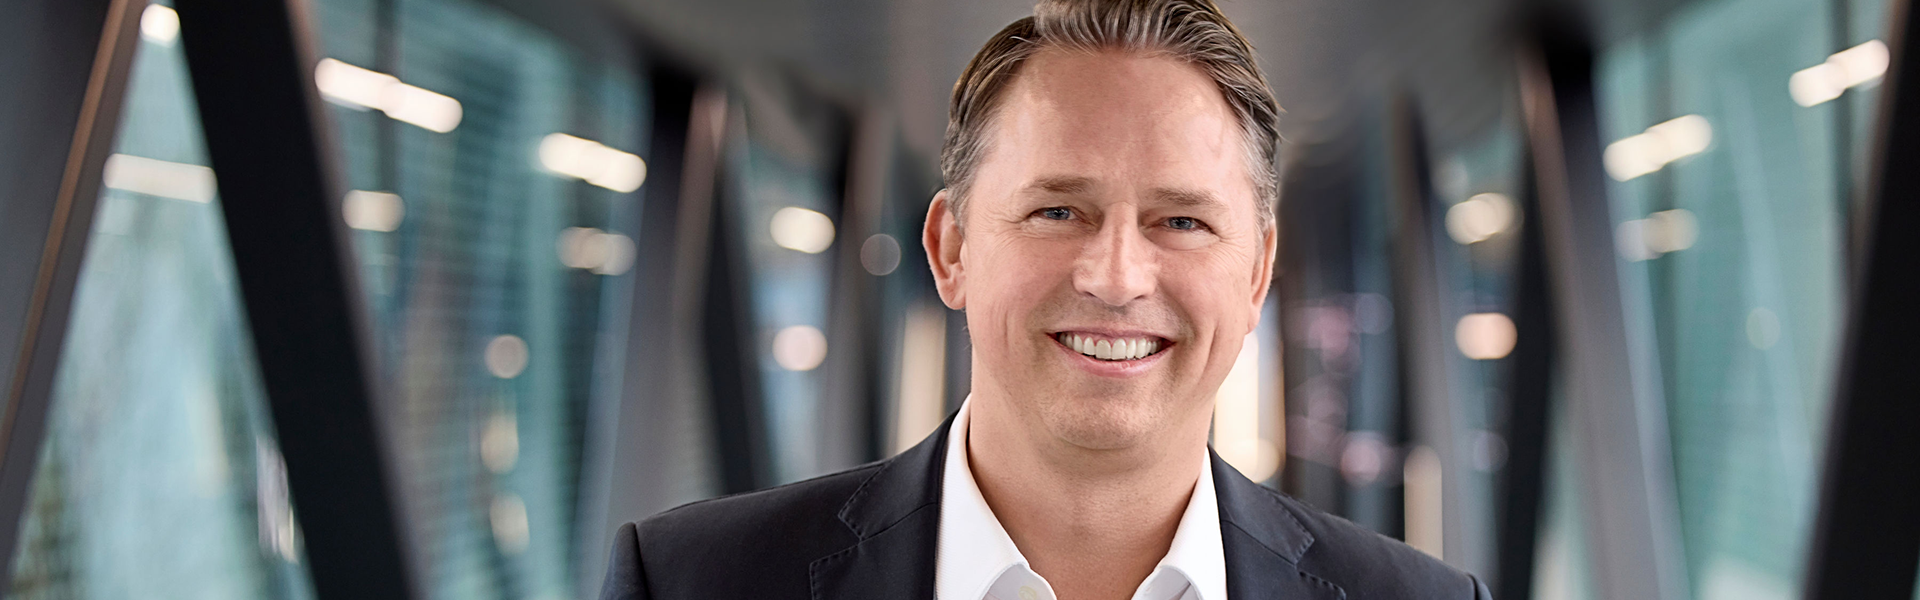 Sven Mulder ist neuer Managing Director der SAP in Deutschland